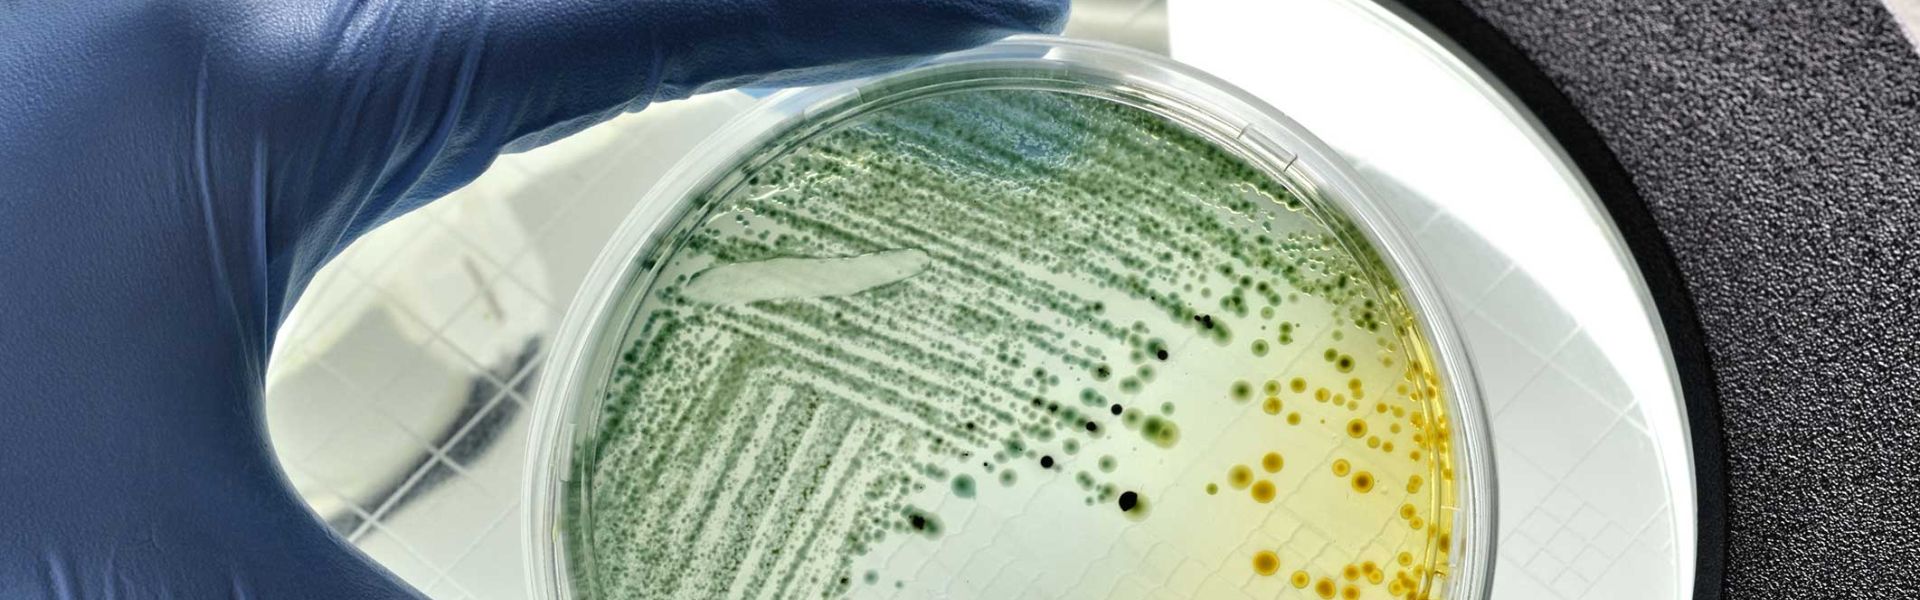 Aliments contaminés par la bactérie E. coli : quels effets sur la santé et comment prévenir les infections ?